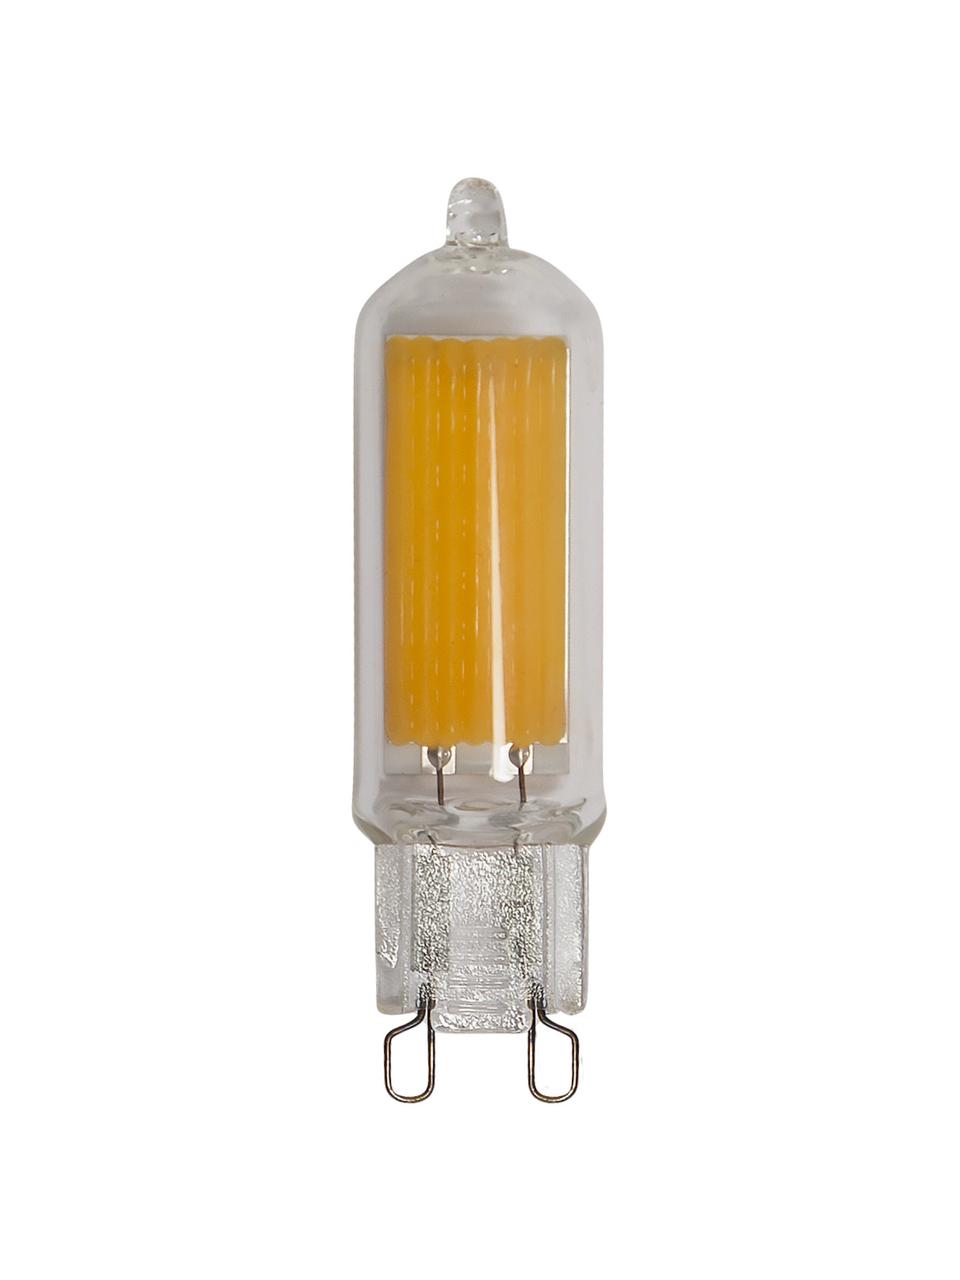 G9 Leuchtmittel, 3W, warmweiß, 1 Stück, Leuchtmittelschirm: Glas, Leuchtmittelfassung: Aluminium, Transparent, Ø 1 x H 6 cm